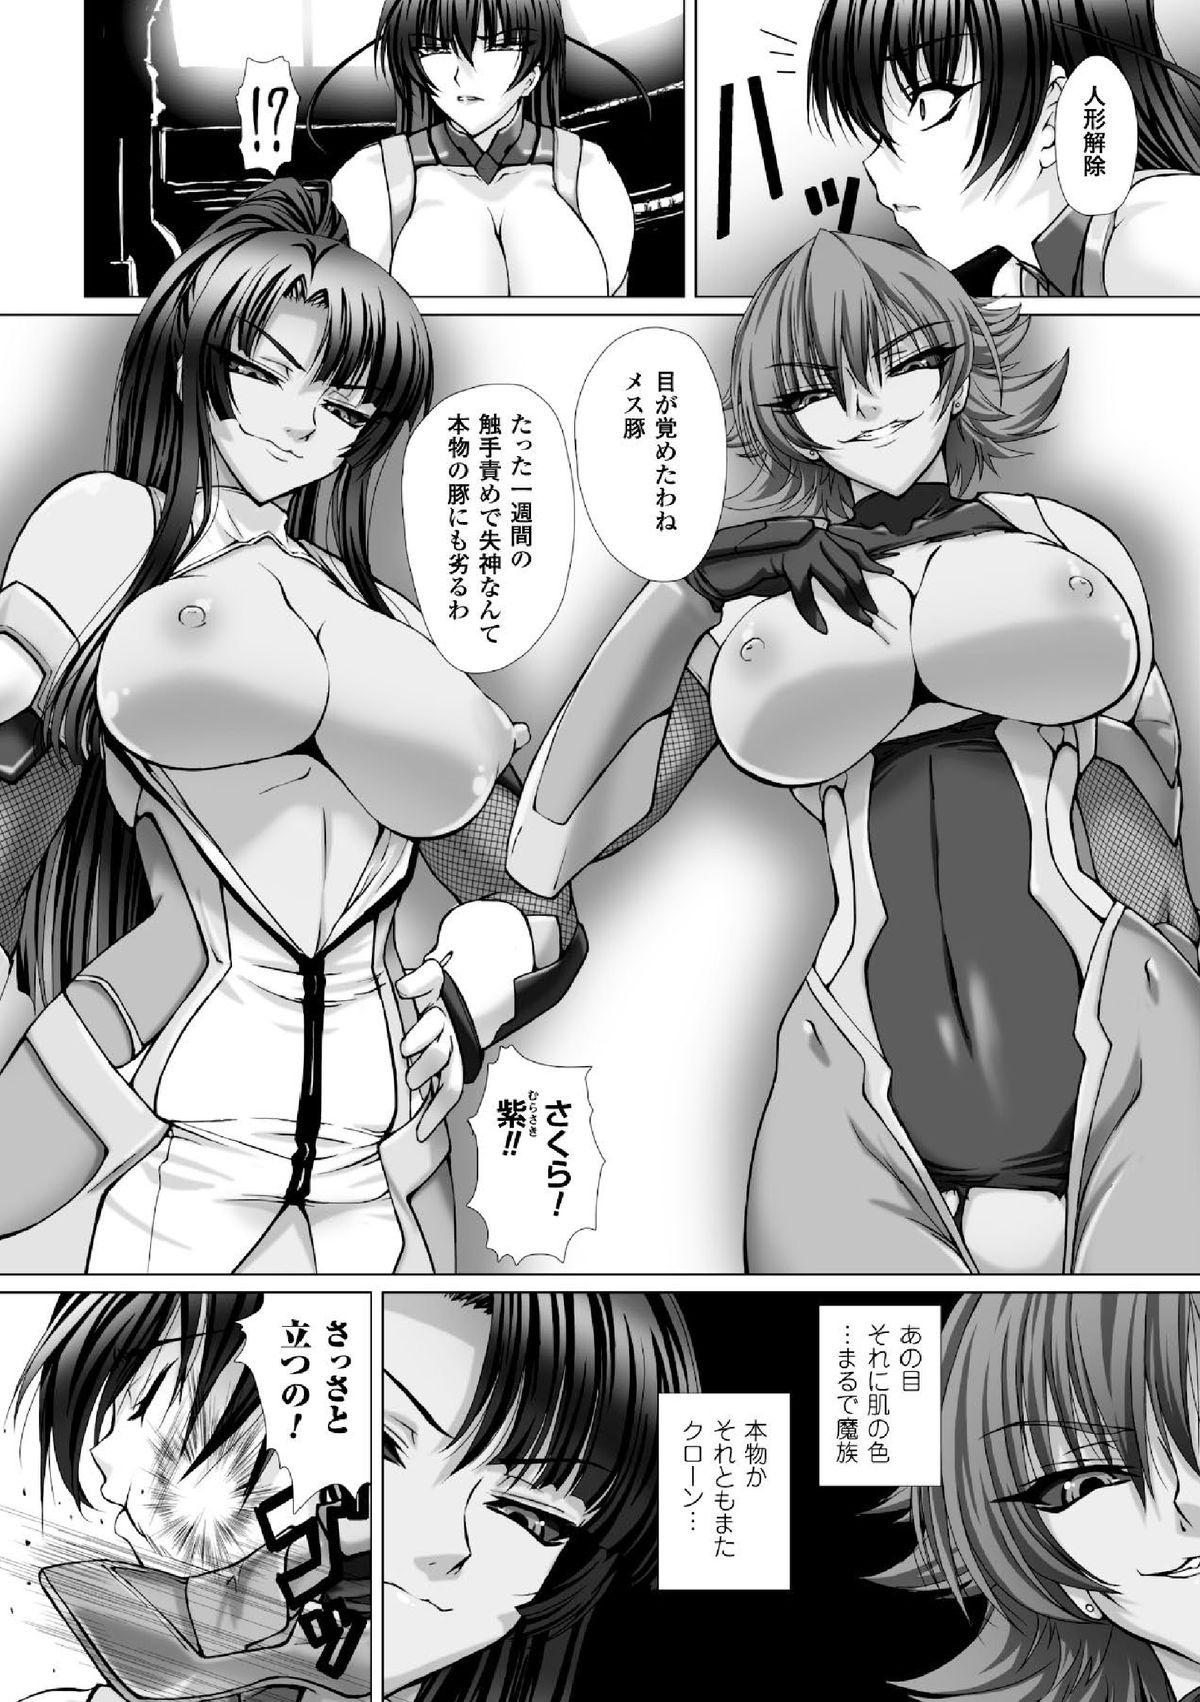 Selfie Megami Crisis 16 - Taimanin asagi Kangoku senkan Koutetsu no majo annerose Deflowered - Page 11